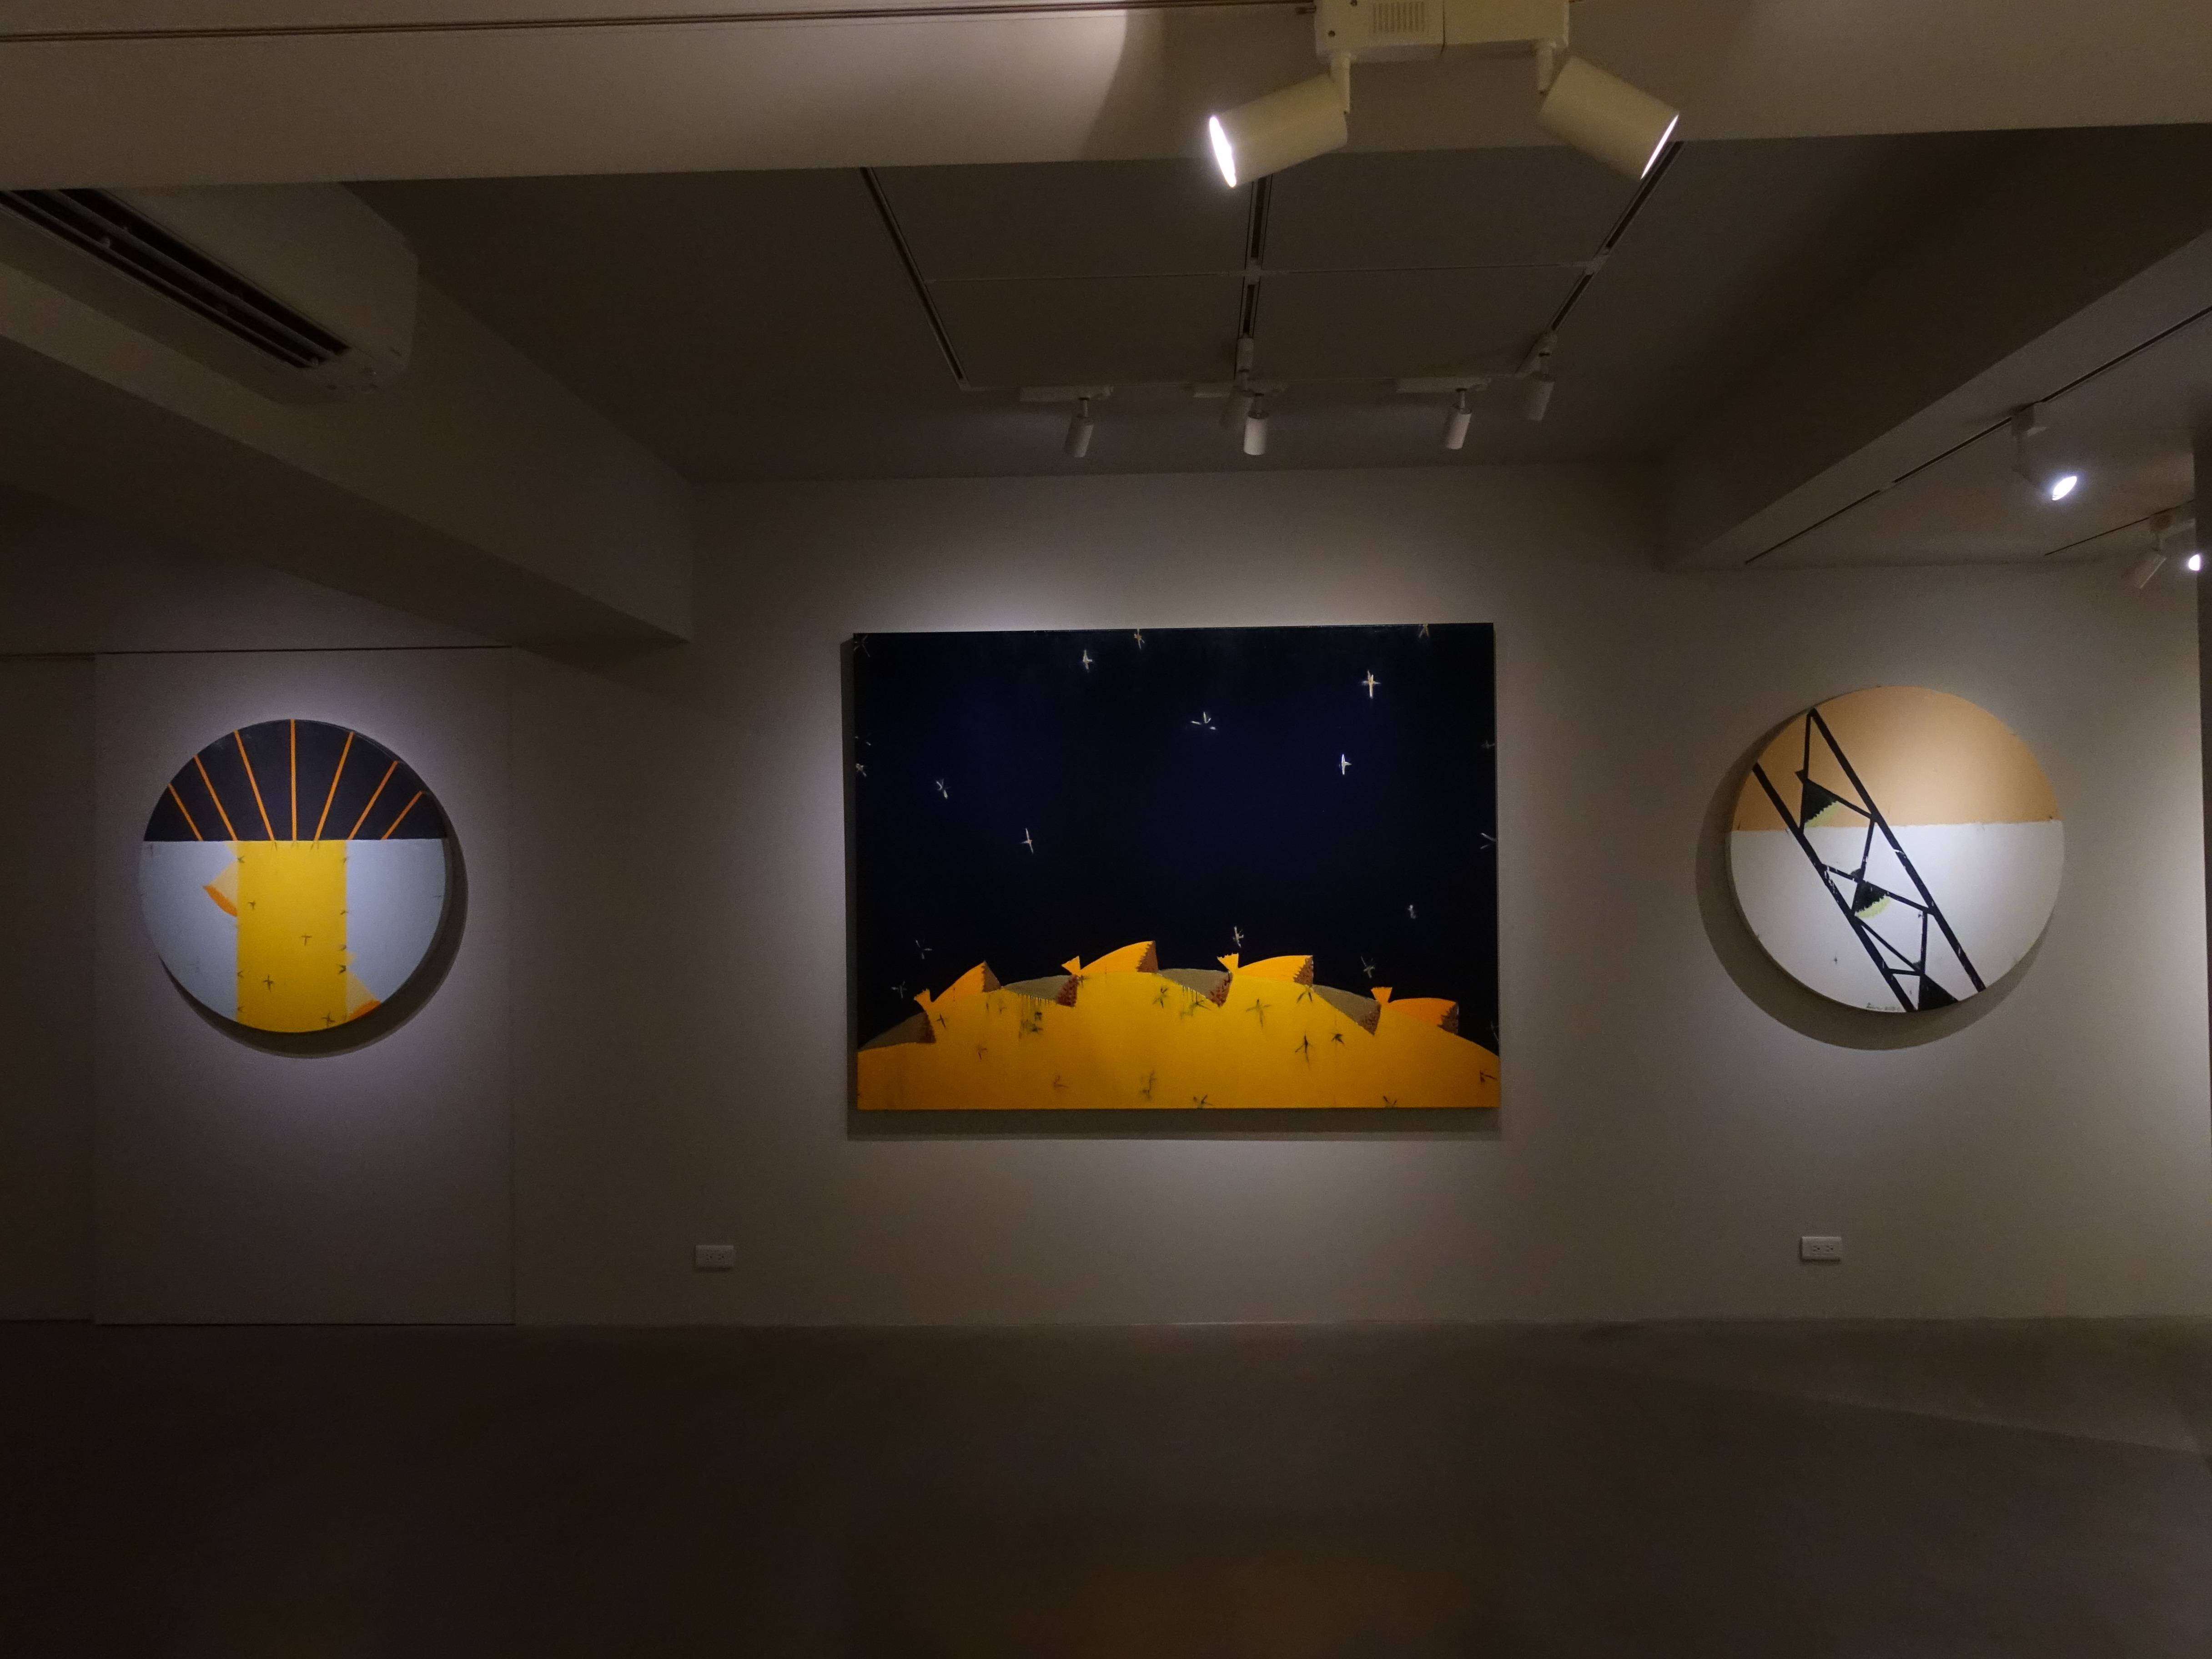 有玺艺术空间:「时空的呼吸 」 刘永仁作品展